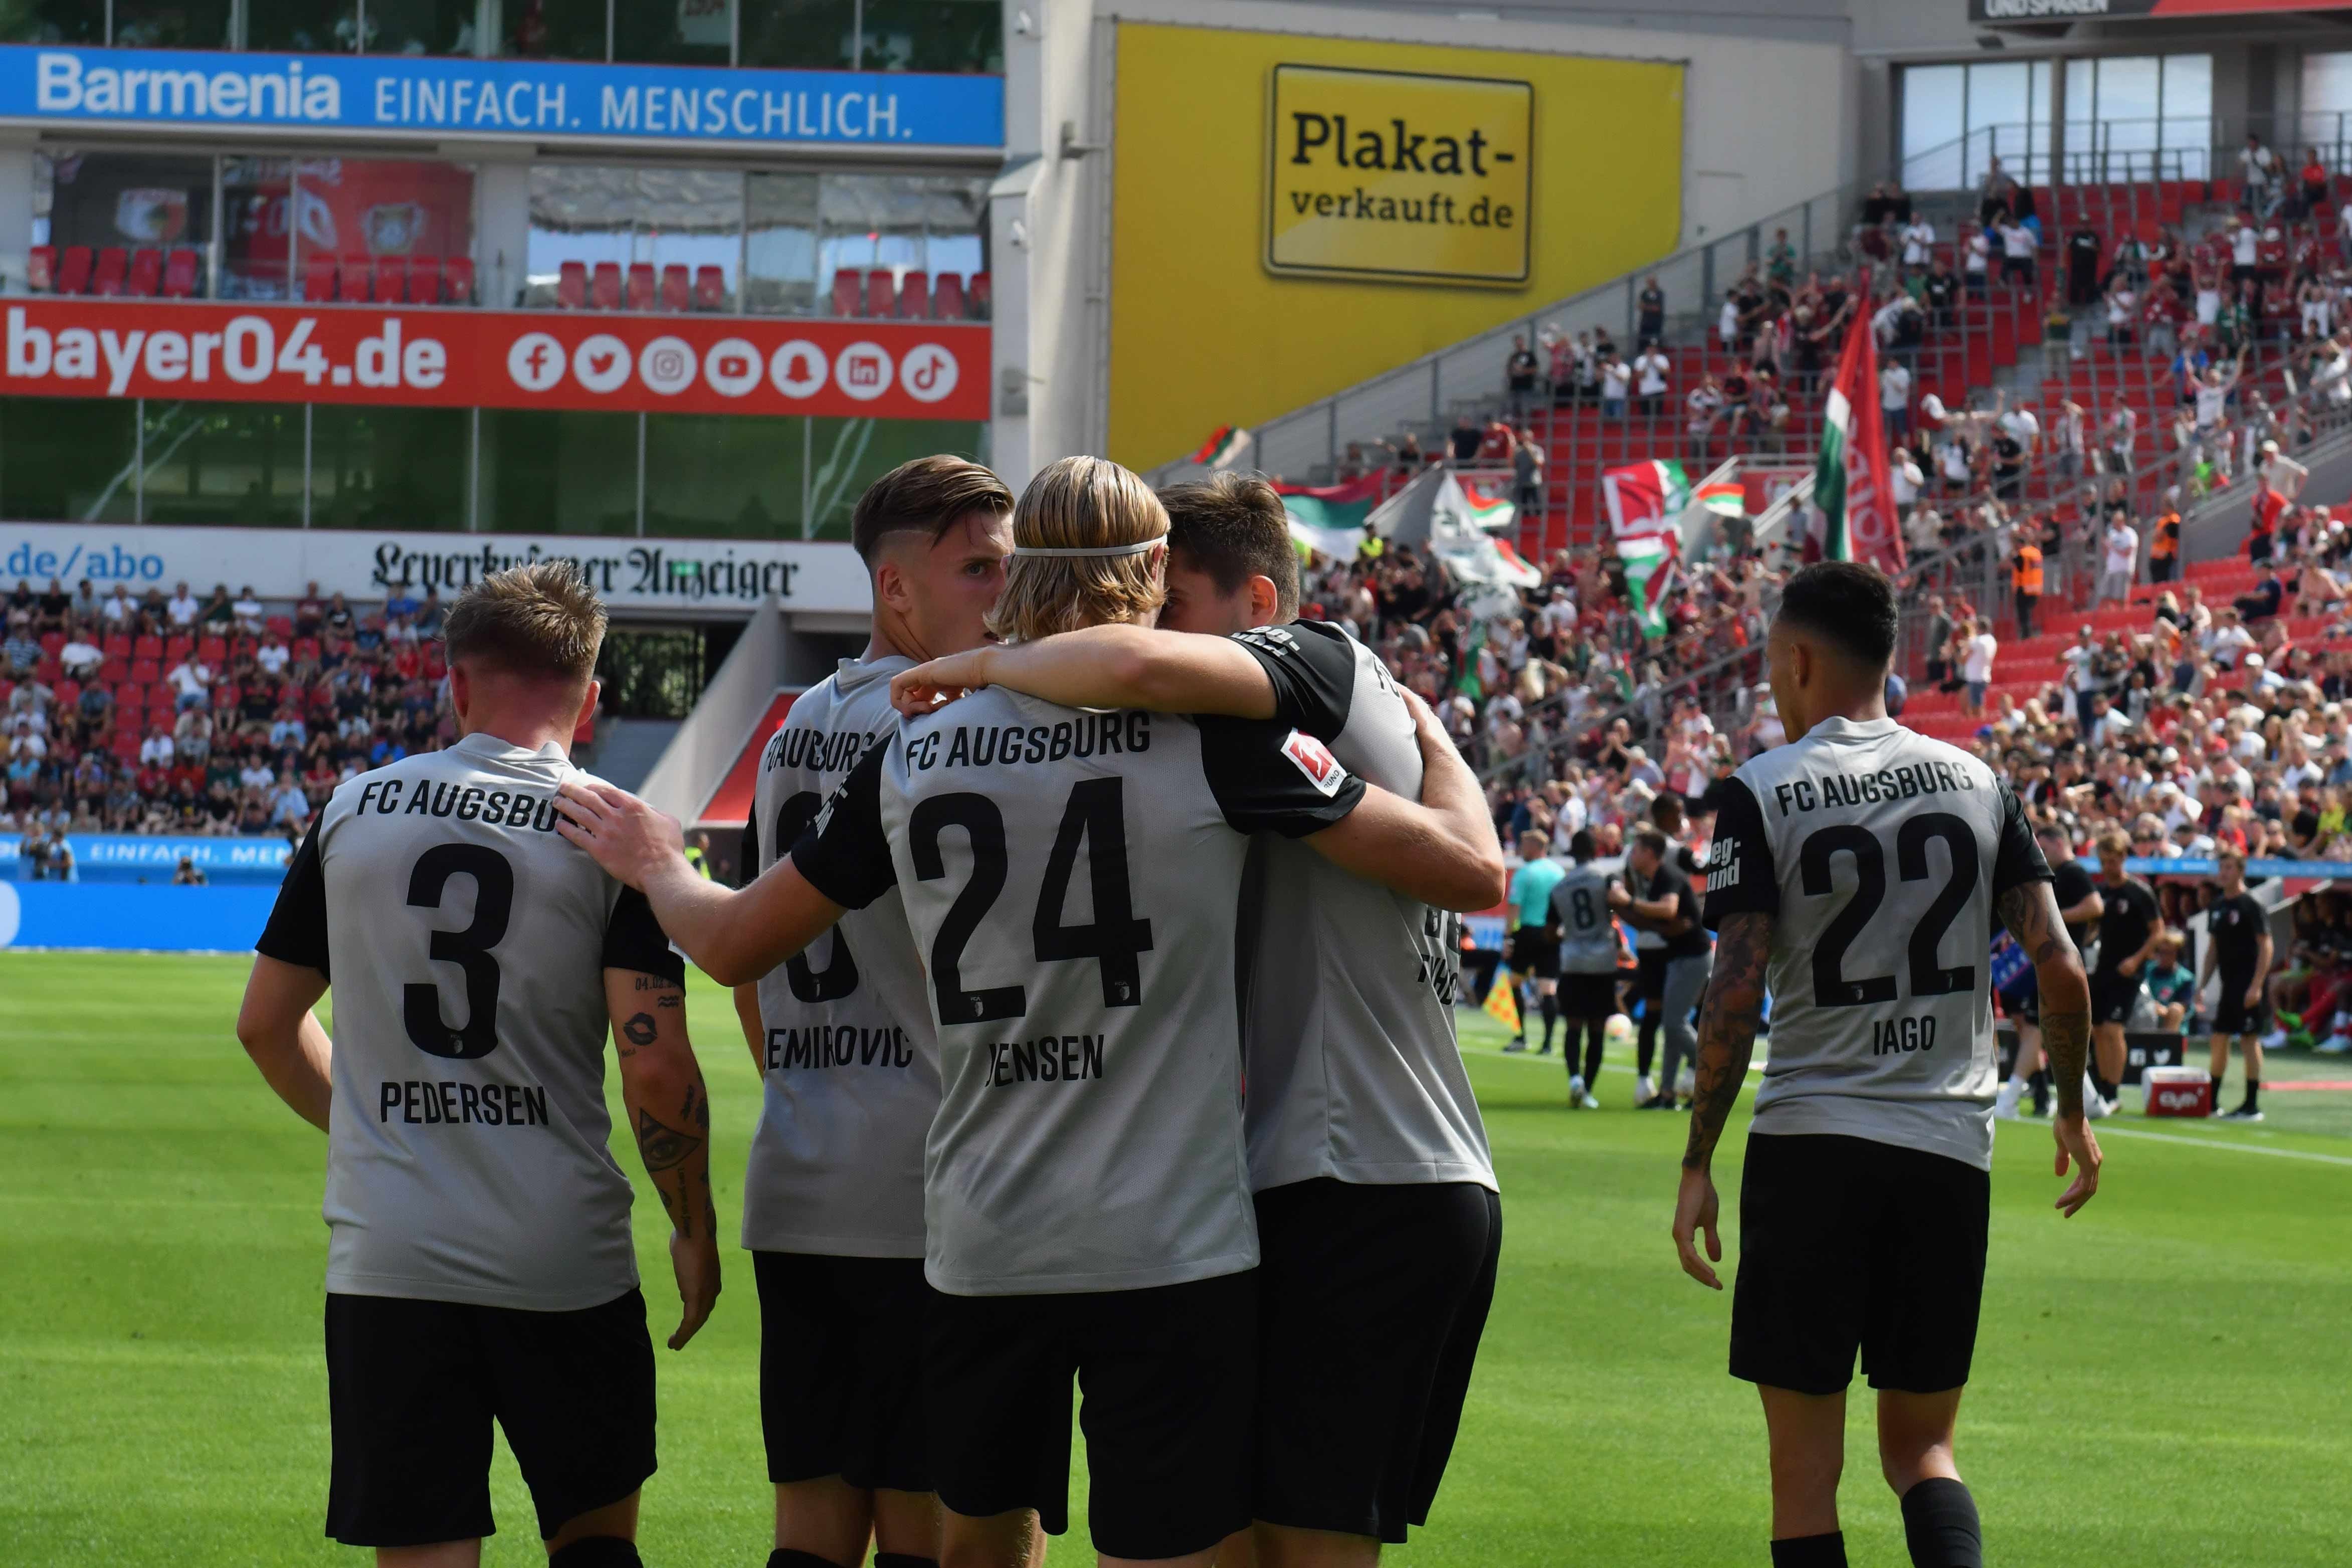 Аугсбург — Майнц прогноз на матч немецкой Бундеслиги 20 августа: ставки и коэффициенты